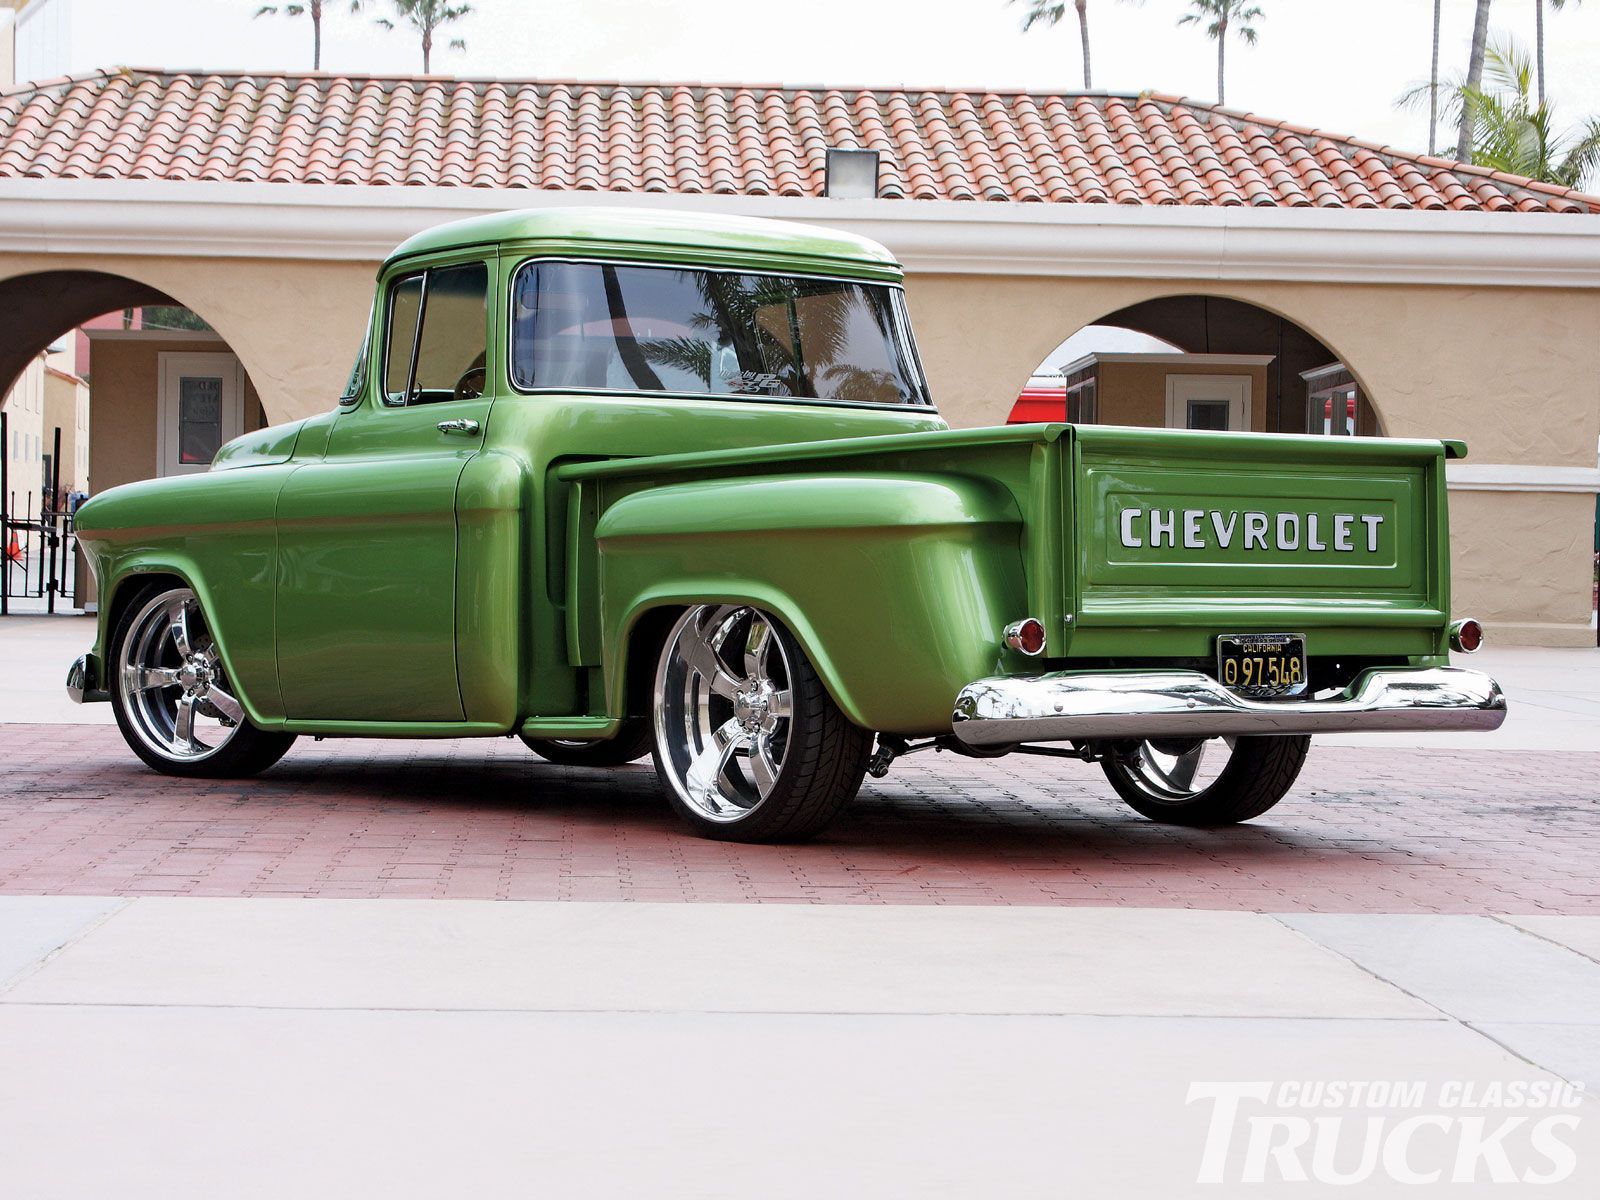 Chevy. Chevrolet trucks, Chevy trucks, 57 chevy trucks